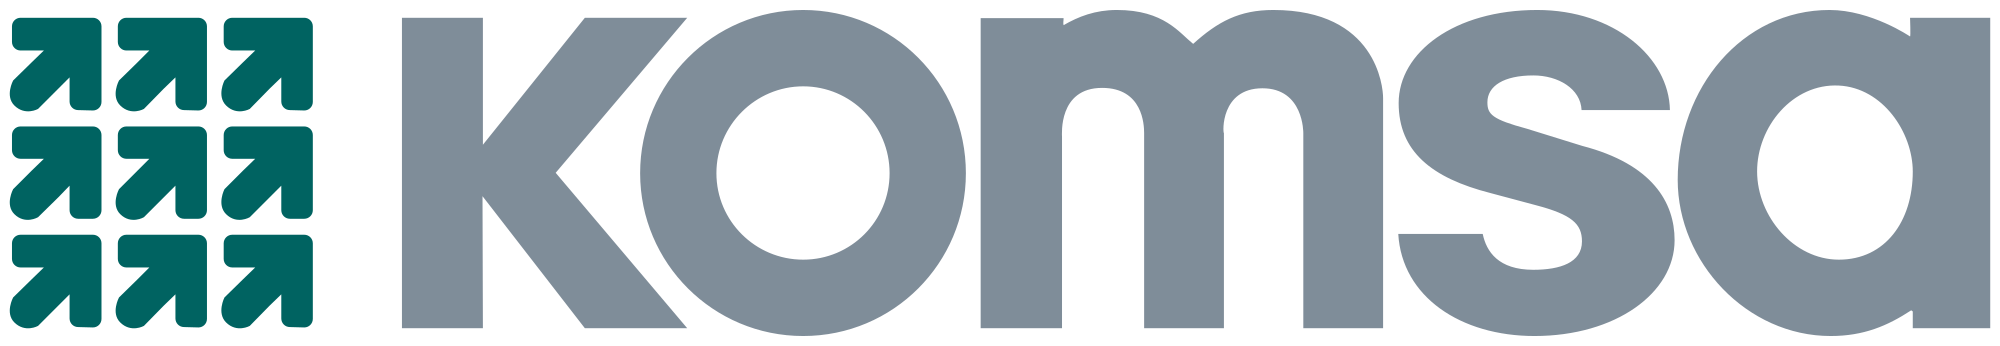 Komsa_logo